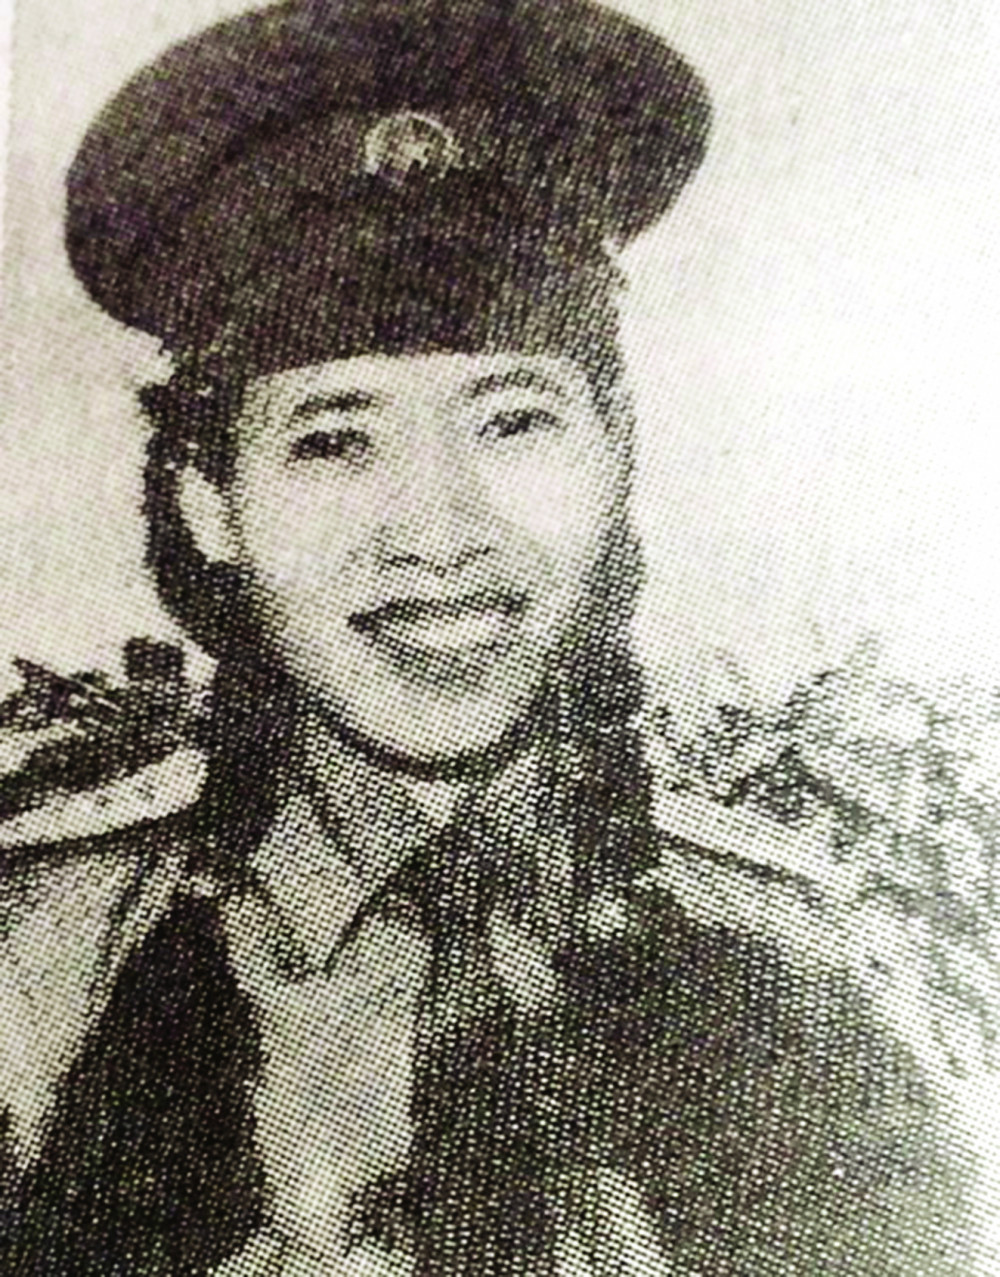 Lúc ra khỏi Côn Đảo  ngày 1/5/1975, Anh hùng lực lượng vũ trang Đoàn Thị Ánh Tuyết chỉ mới 23 tuổi